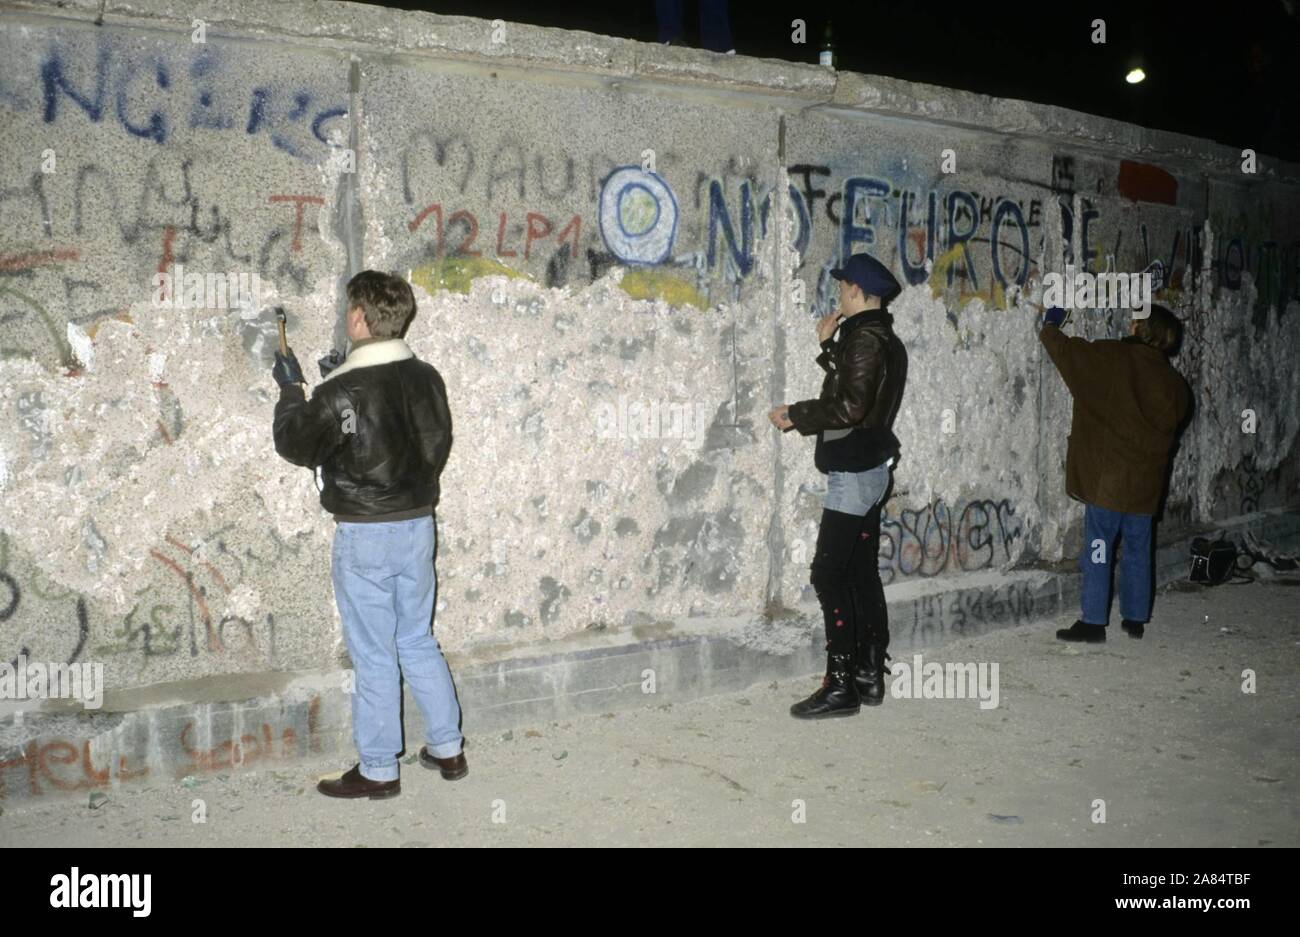 Fall der Berliner Mauer. Im Bild einige Leute mit Hämmern geschlagen der restlichen Wand. Dezember 31, 1989 - Januar 1, 1990, Berlin, Deutschland --- wiedervereinigten deutschen feiern Sie Silvester auf der Berliner Mauer zwei Monate nach der Grenze zwischen dem geteilten Stadt eröffnet. © Thierry Monasse/europolitiquephoto.eu (Monasse/Fotogramma, Berlin - 1989-12-31) ps das Foto kann in Bezug auf den Kontext, in dem es aufgenommen wurde verwendet werden, und ohne beleidigende Absicht der Anstand des Volkes vertreten Redaktionelle Nutzung Stockfoto